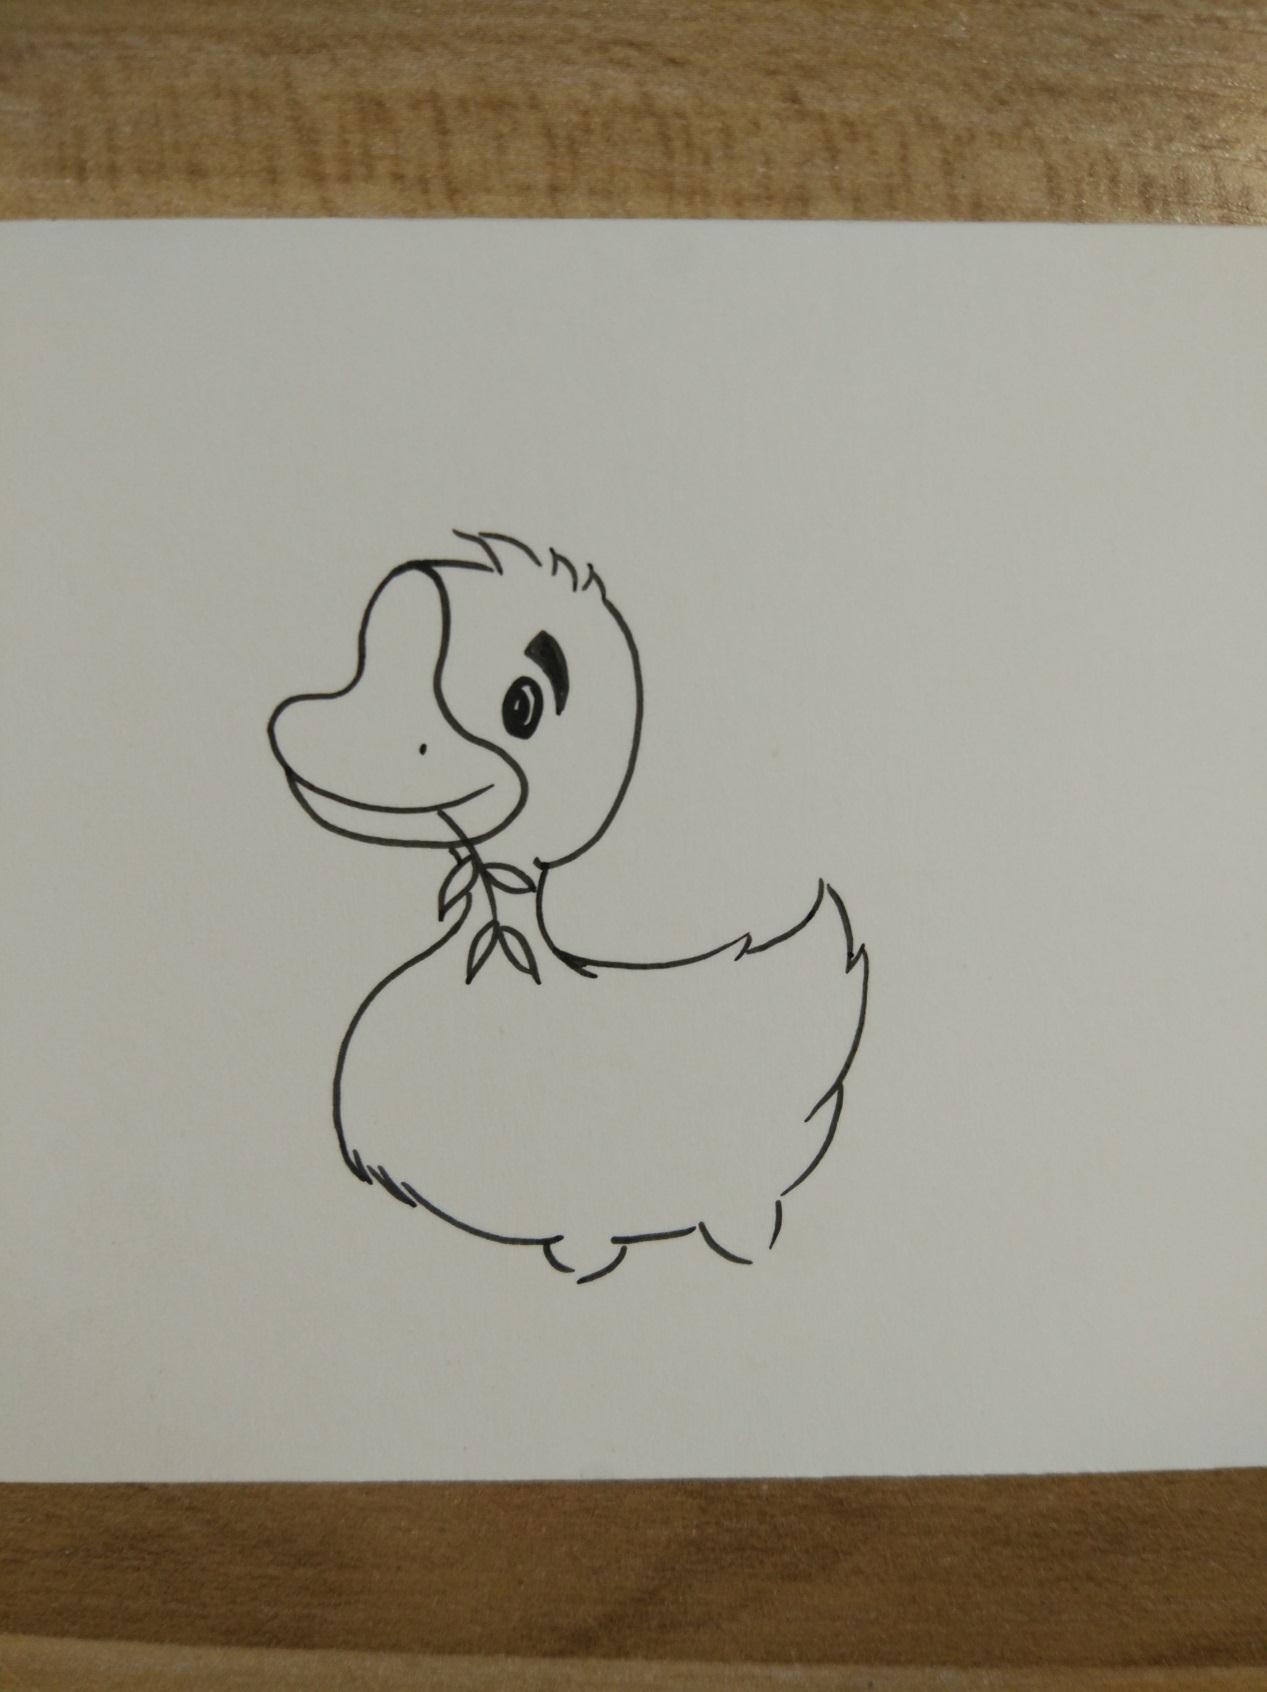 教你画简单的动物水彩画―可爱的小鸭子手绘教程